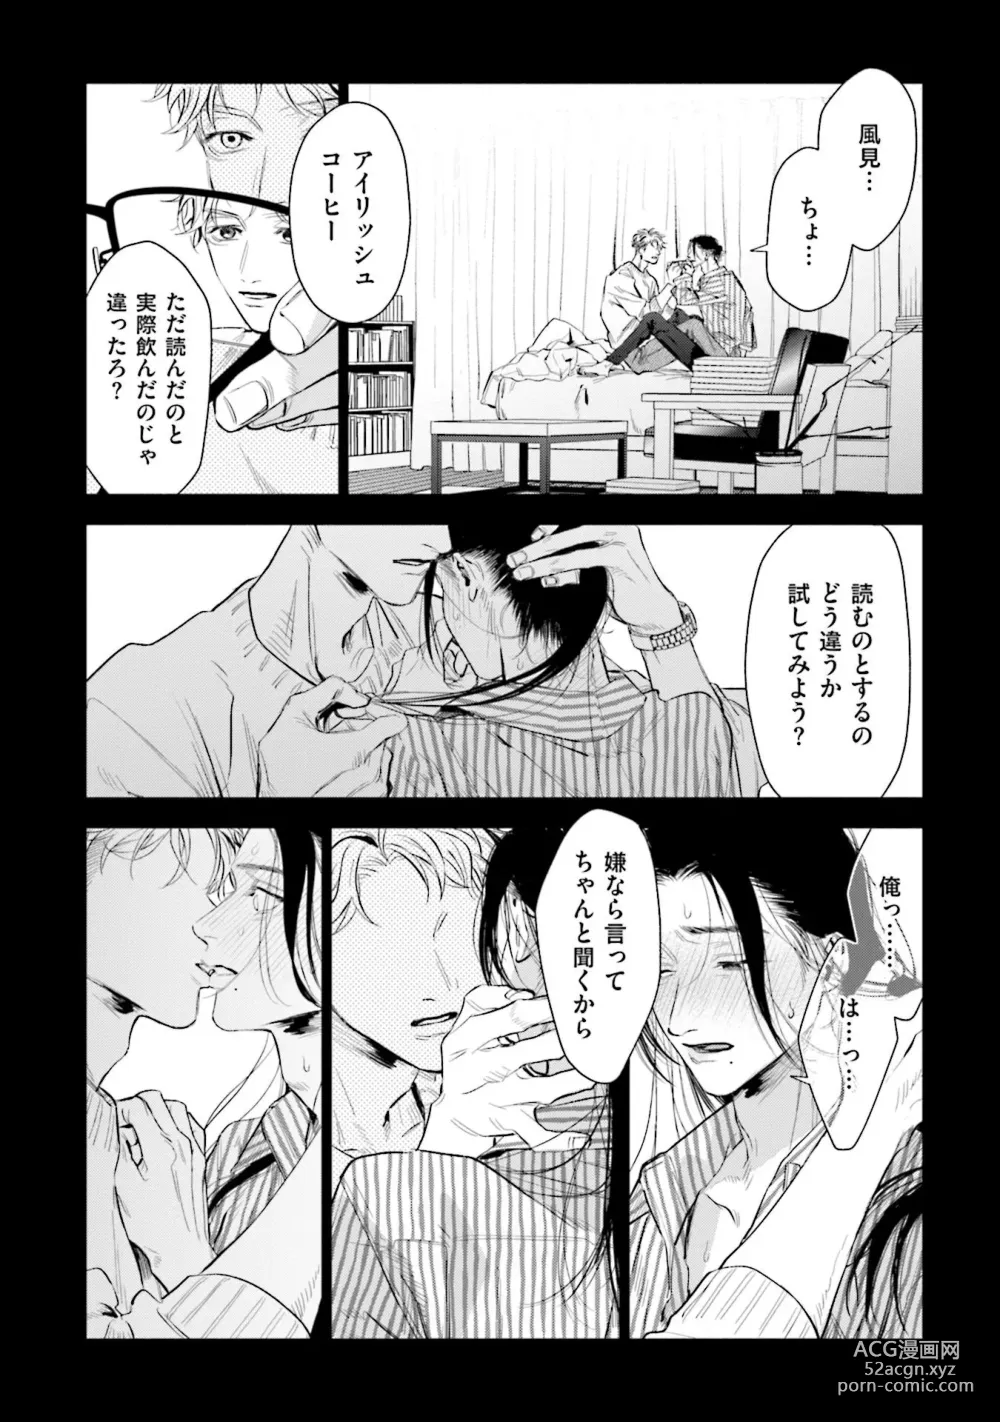 Page 20 of manga Hitoriyogari no Vanilla